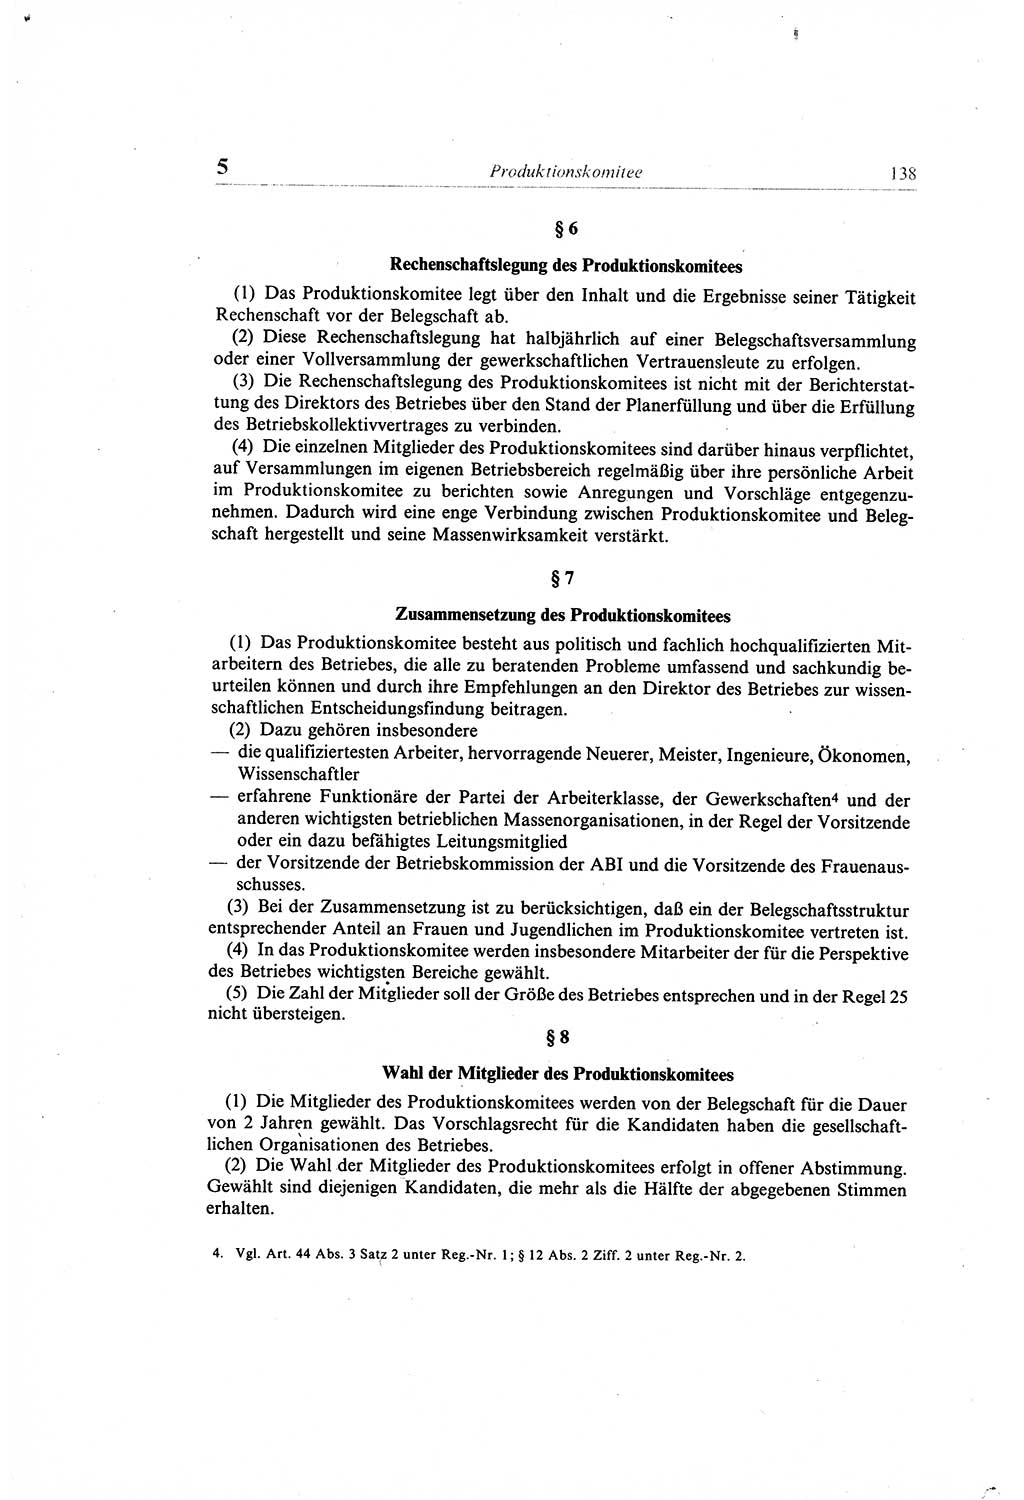 Gesetzbuch der Arbeit (GBA) und andere ausgewählte rechtliche Bestimmungen [Deutsche Demokratische Republik (DDR)] 1968, Seite 138 (GBA DDR 1968, S. 138)